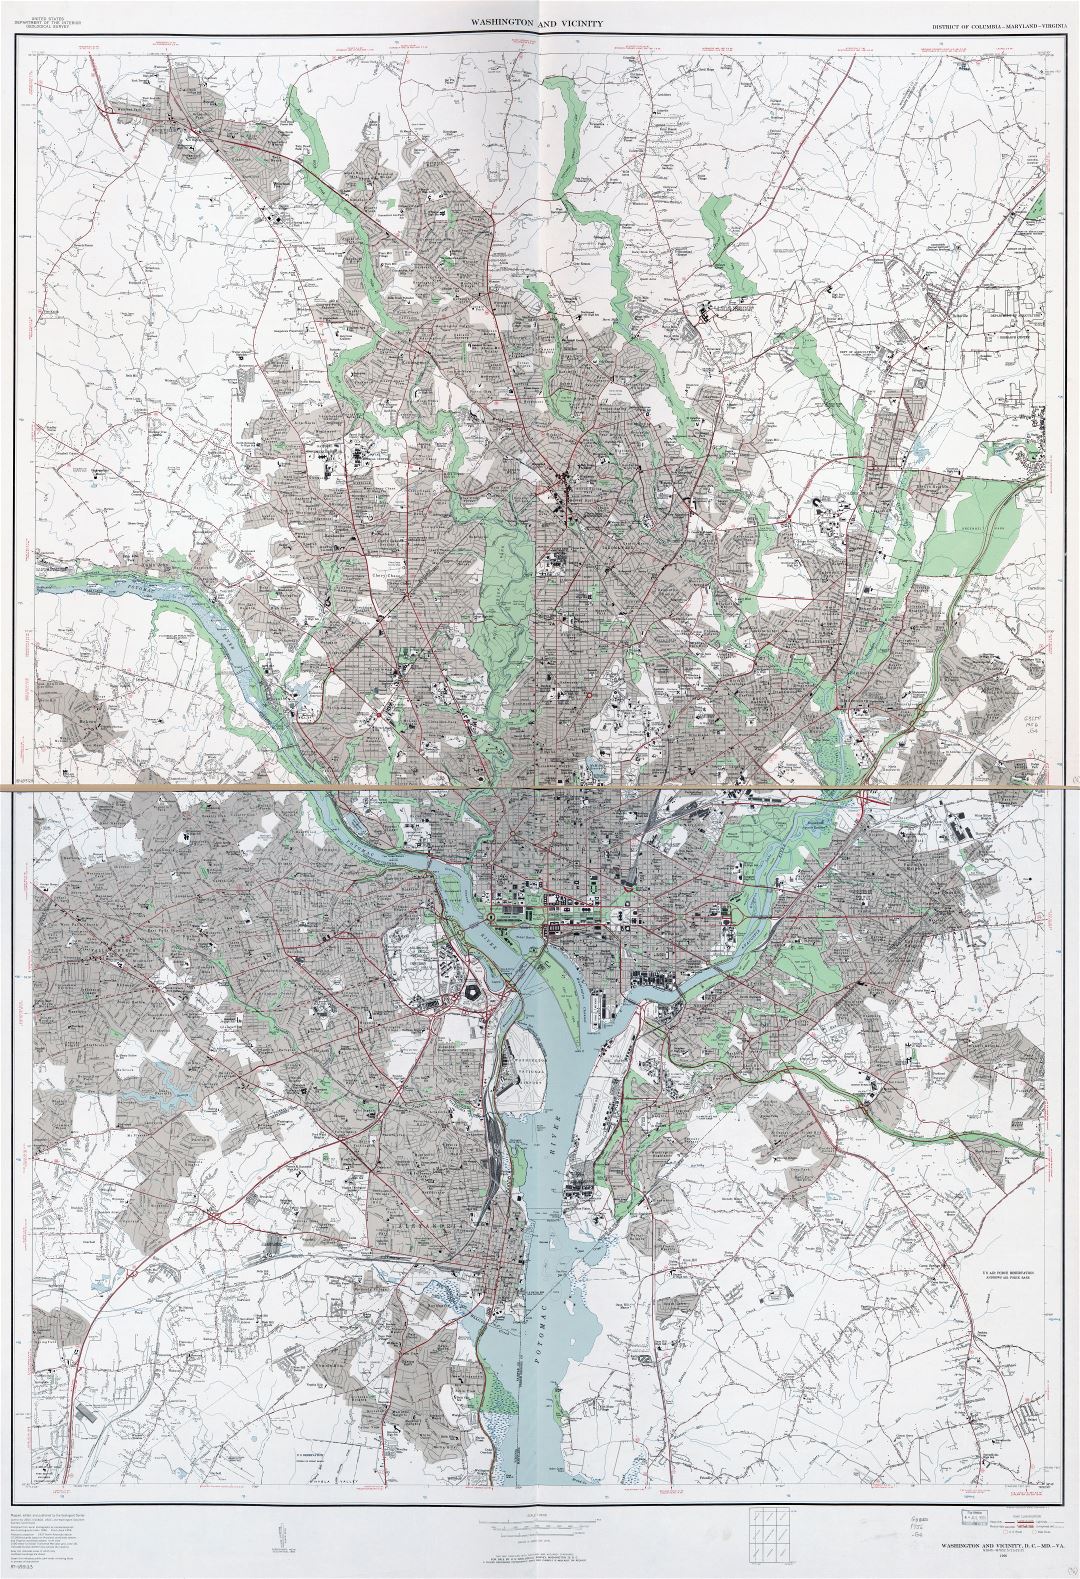 Крупномасштабная детальная карта Вашингтона и окрестностей, округ Колумбия, штат Мэриленд, Вирджиния - 1956